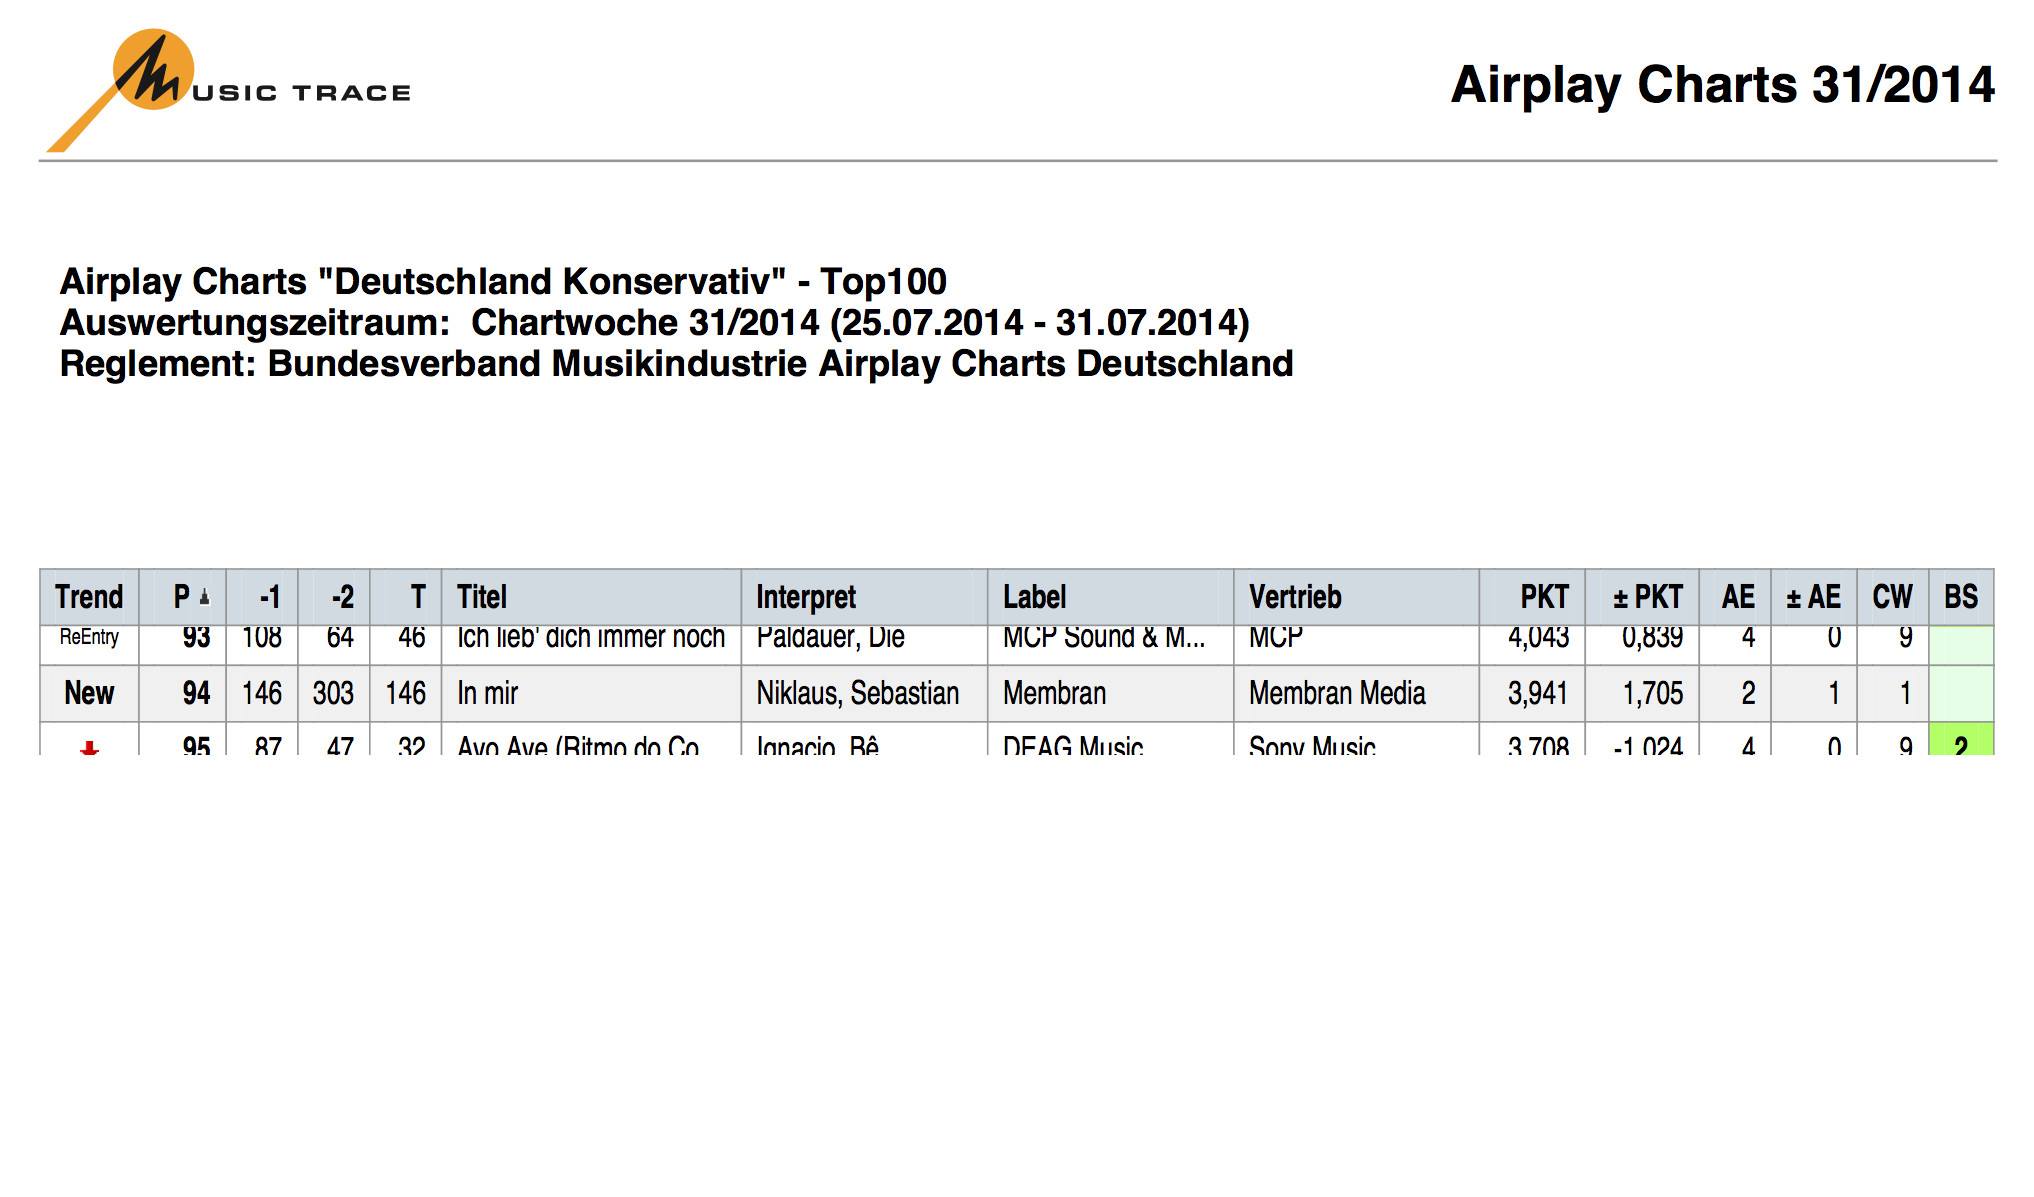 Airplay Charts Deutschland konservativ KW31/2014